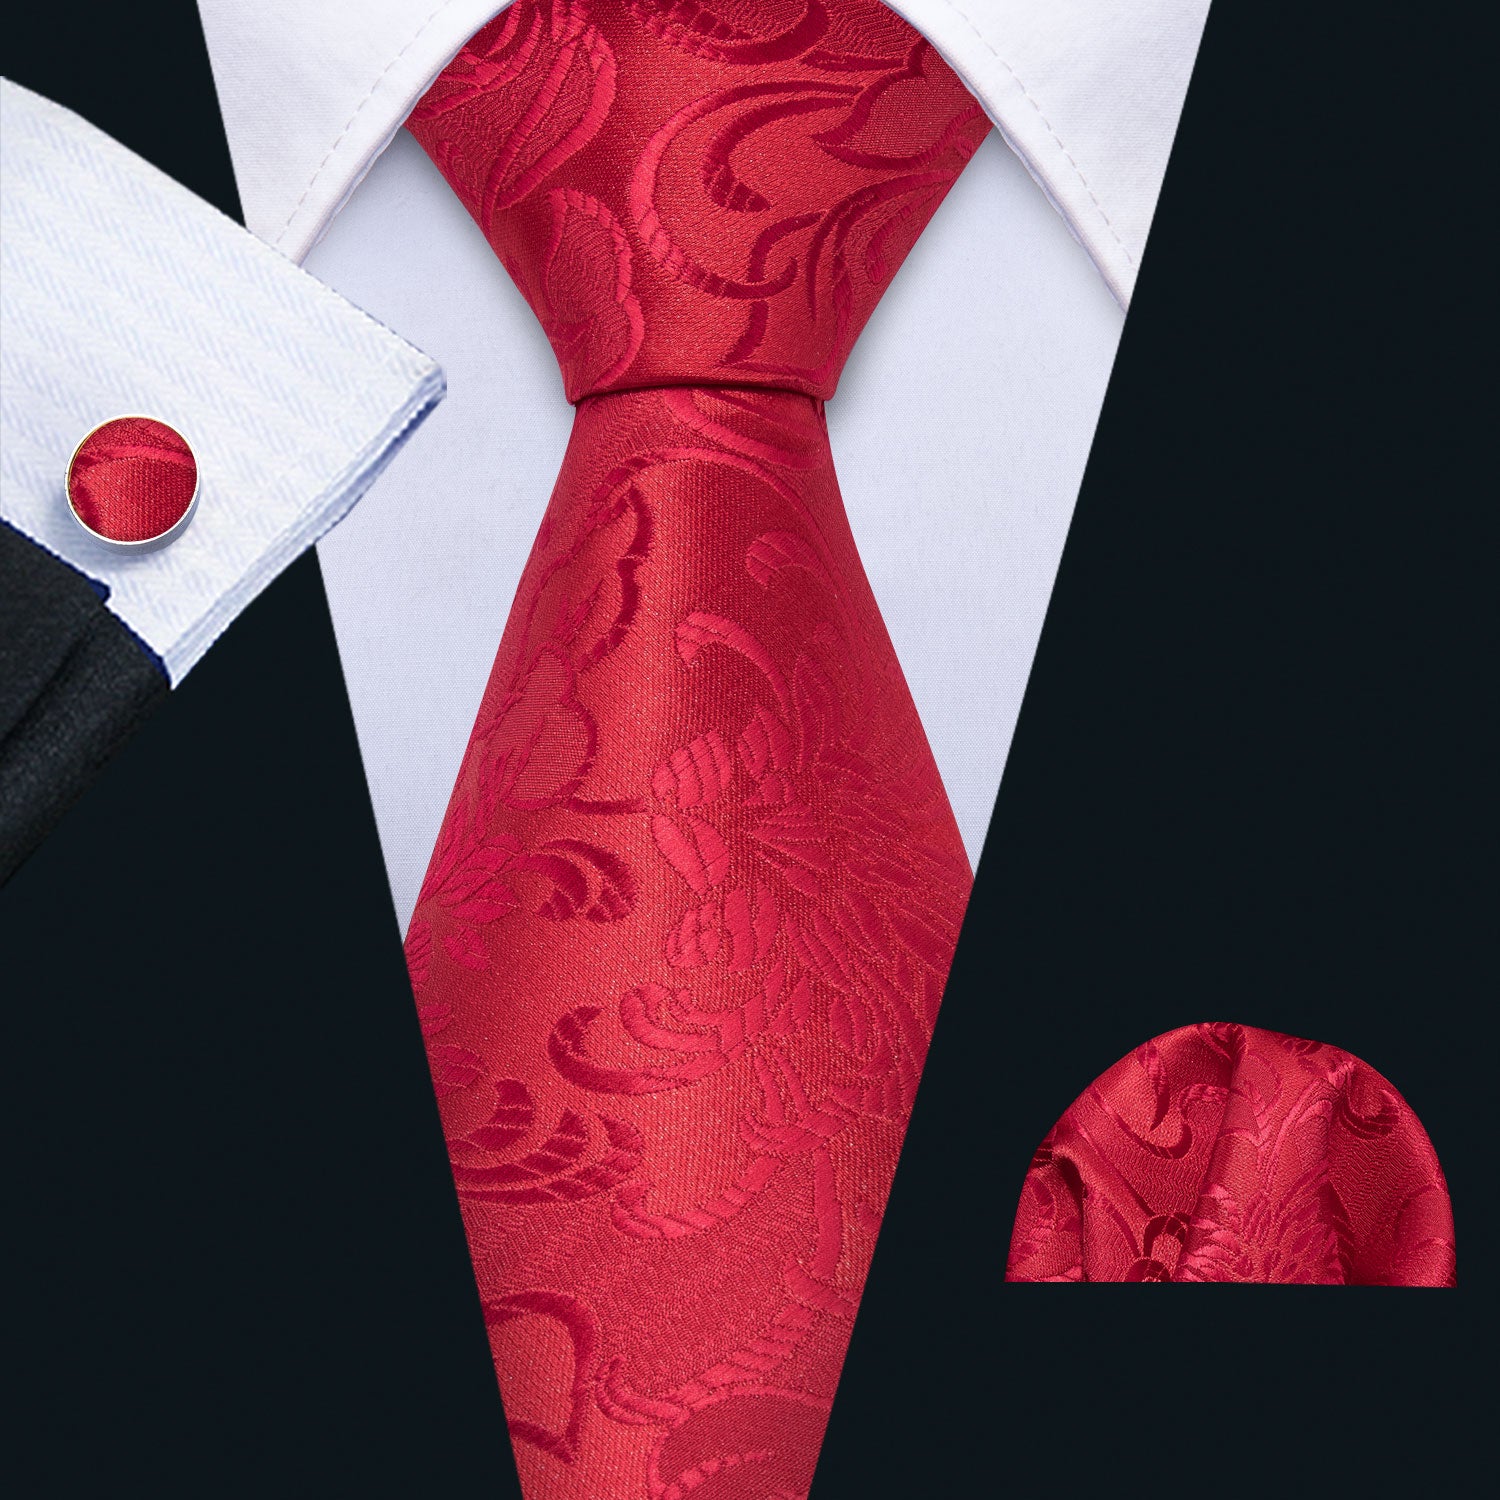 Red Necktie Wedding Red Floral Tie Pocket Square Cufflinks Set